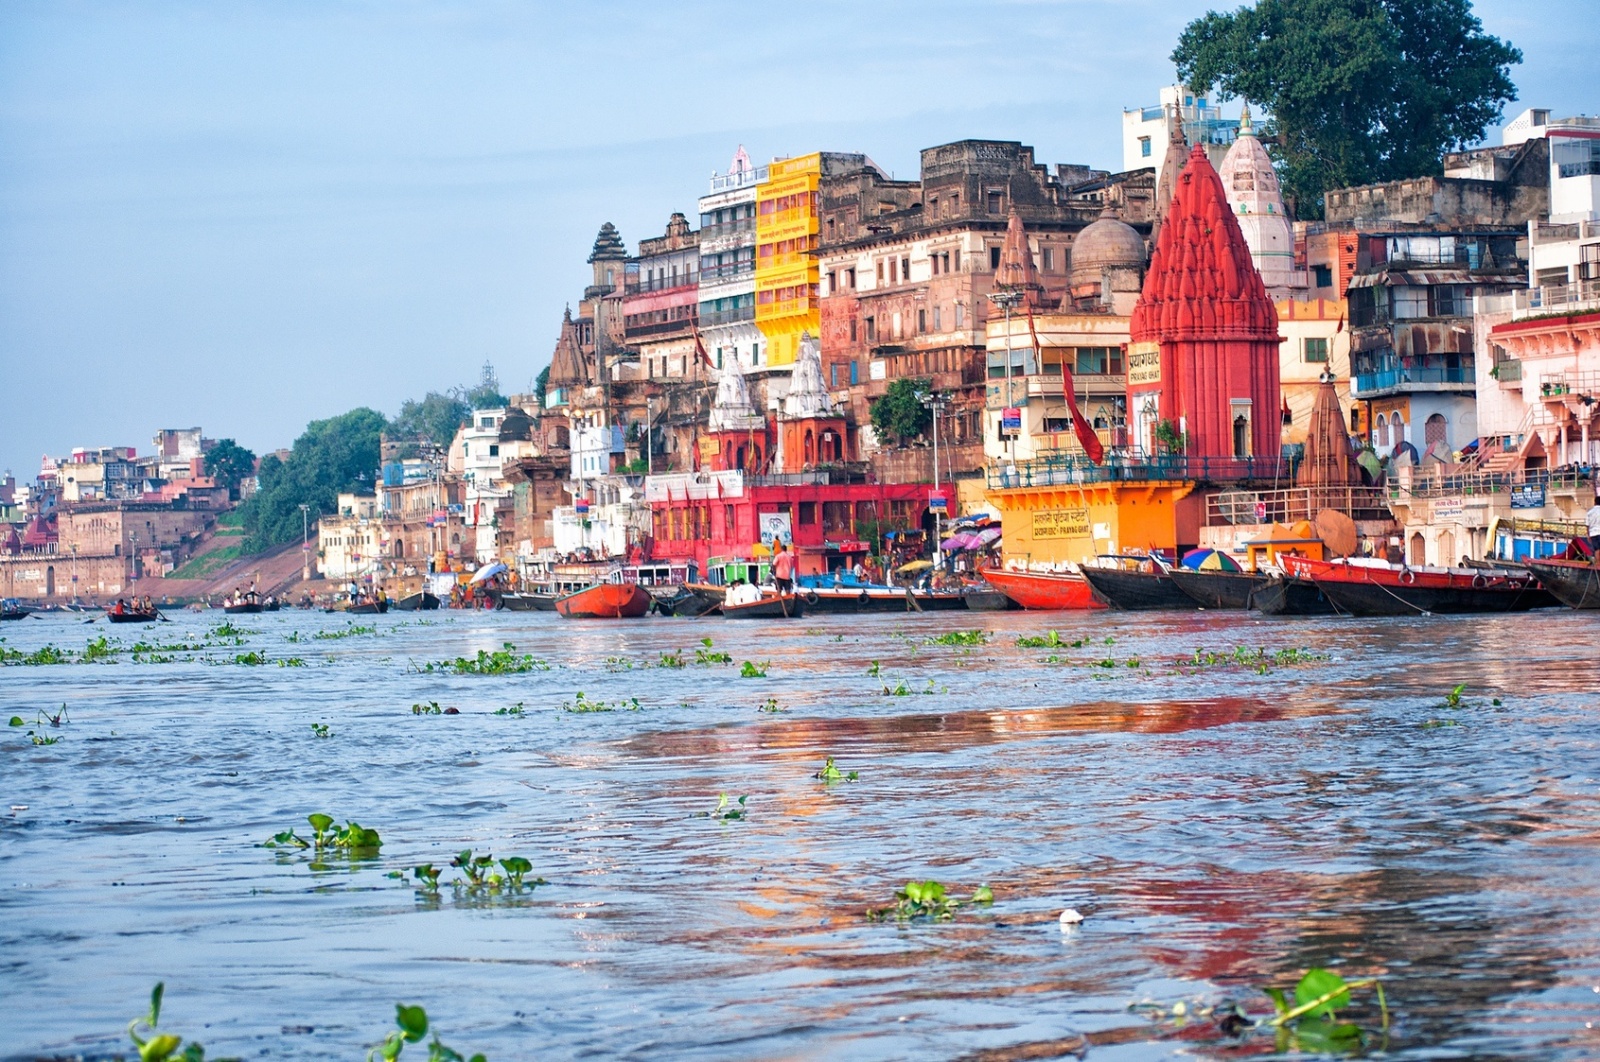 Ganges Biuro podróży Goforworld by Kuźniar